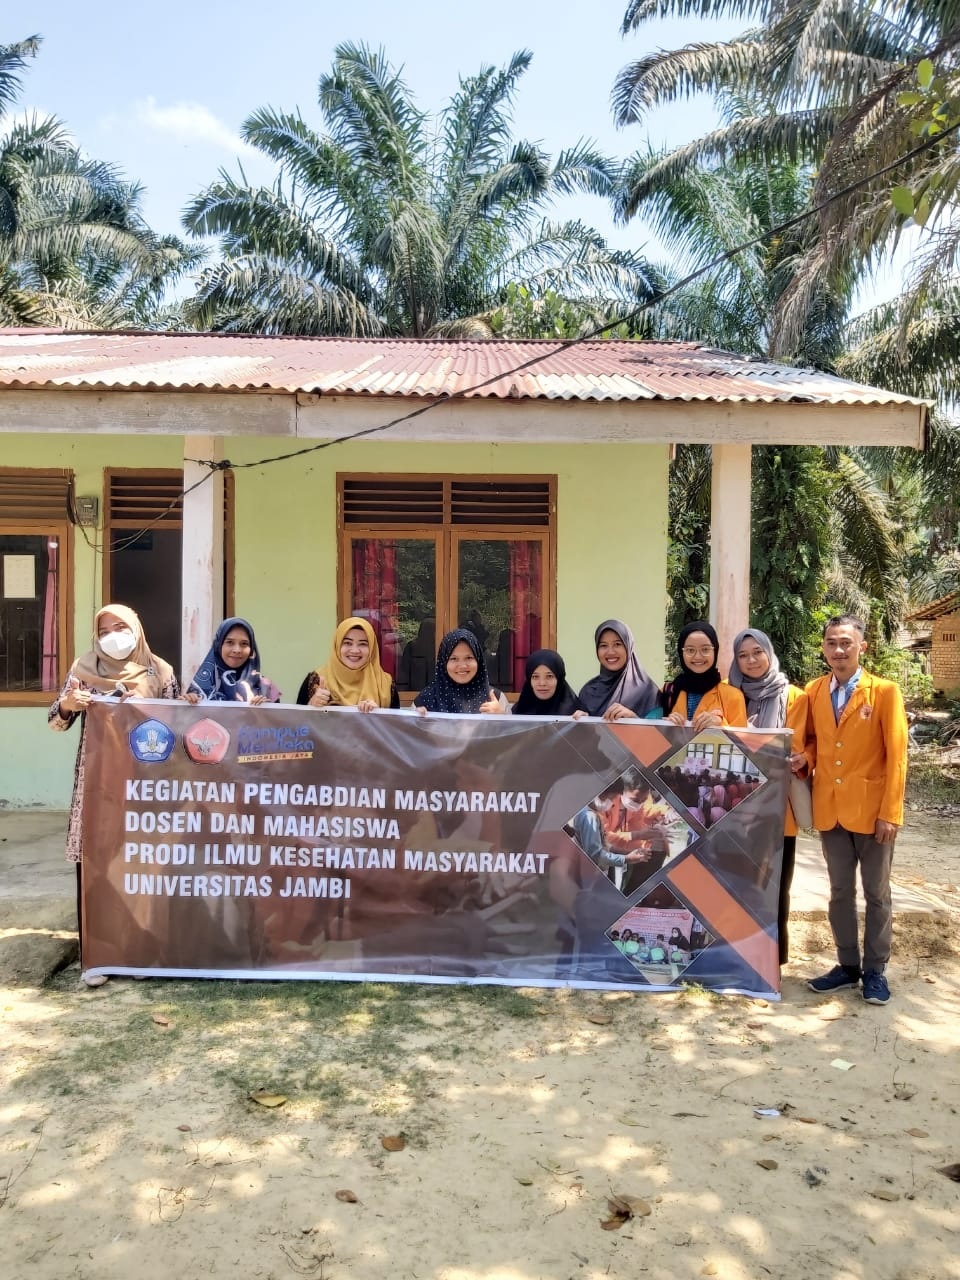 Cegah Stunting, Dosen dan Mahasiswa Unja Laksanakan PKM di Desa Tanjung Lanjut